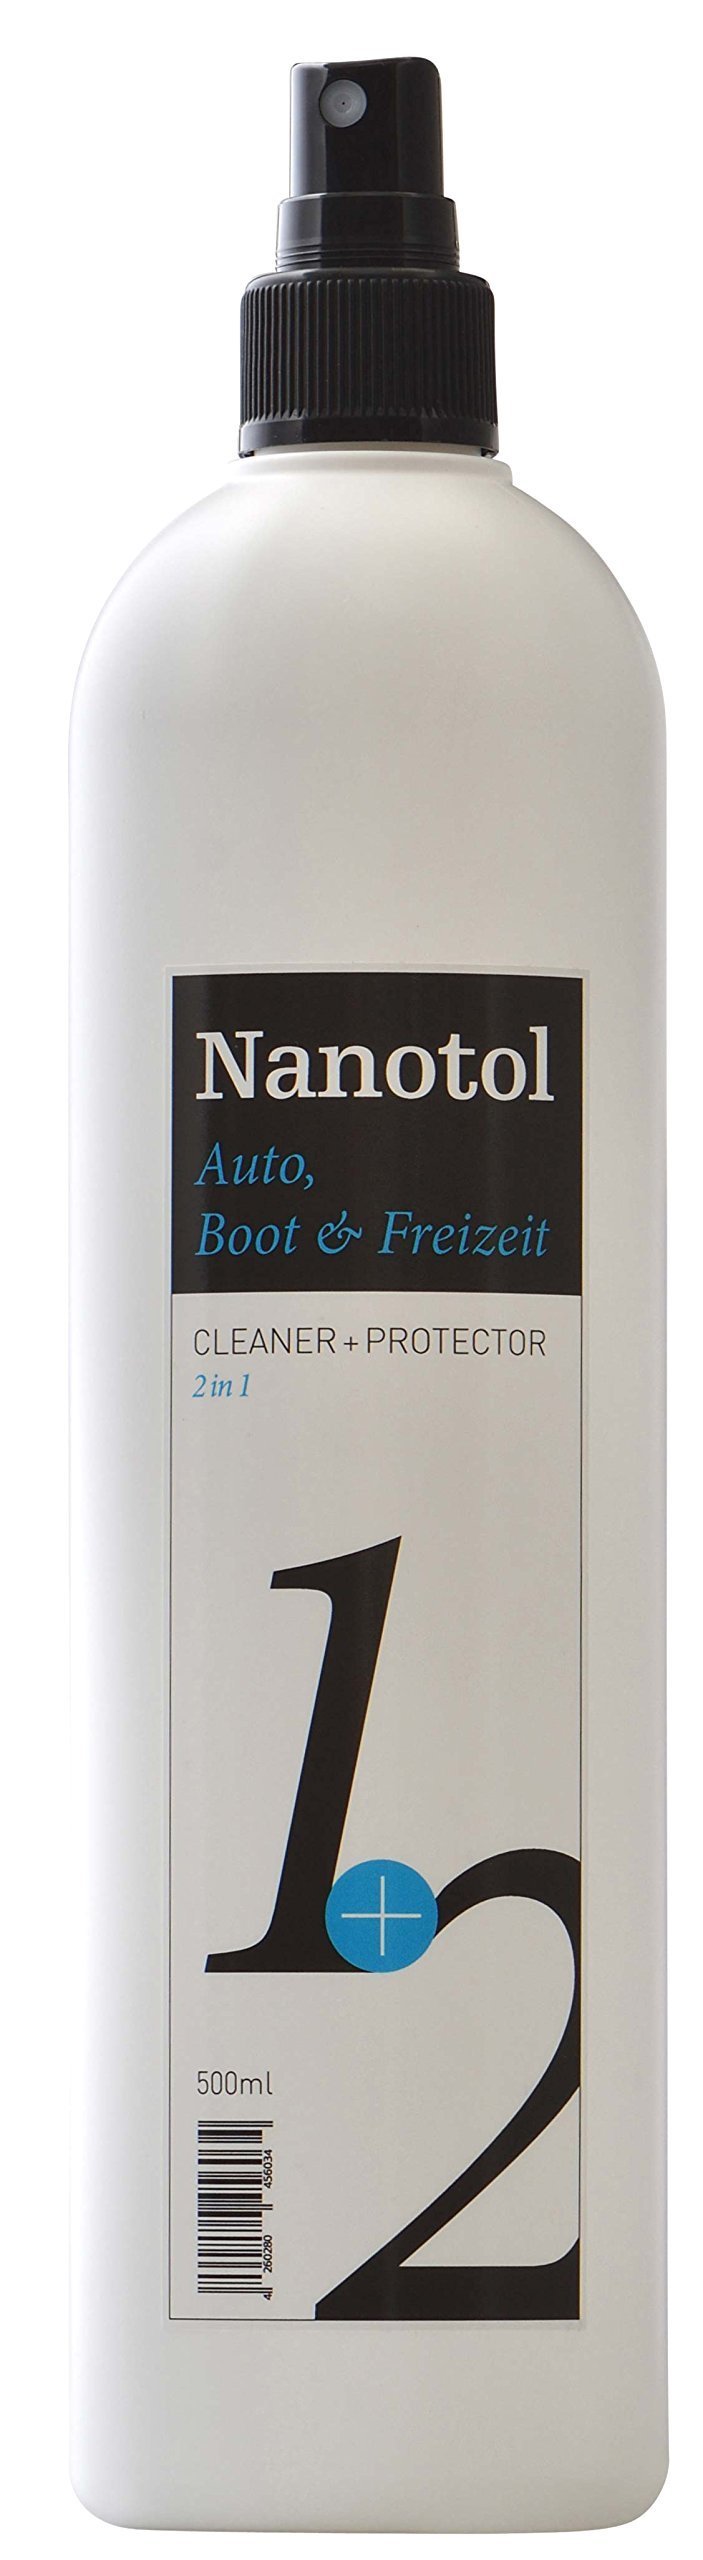 Nanotol Regenabweiser Scheibenversiegelung 2in1 Cleaner und Protector = Reinigung und Nanoversiegelung | Autopflege mit Lotuseffekt (500 ml) von Nanotol